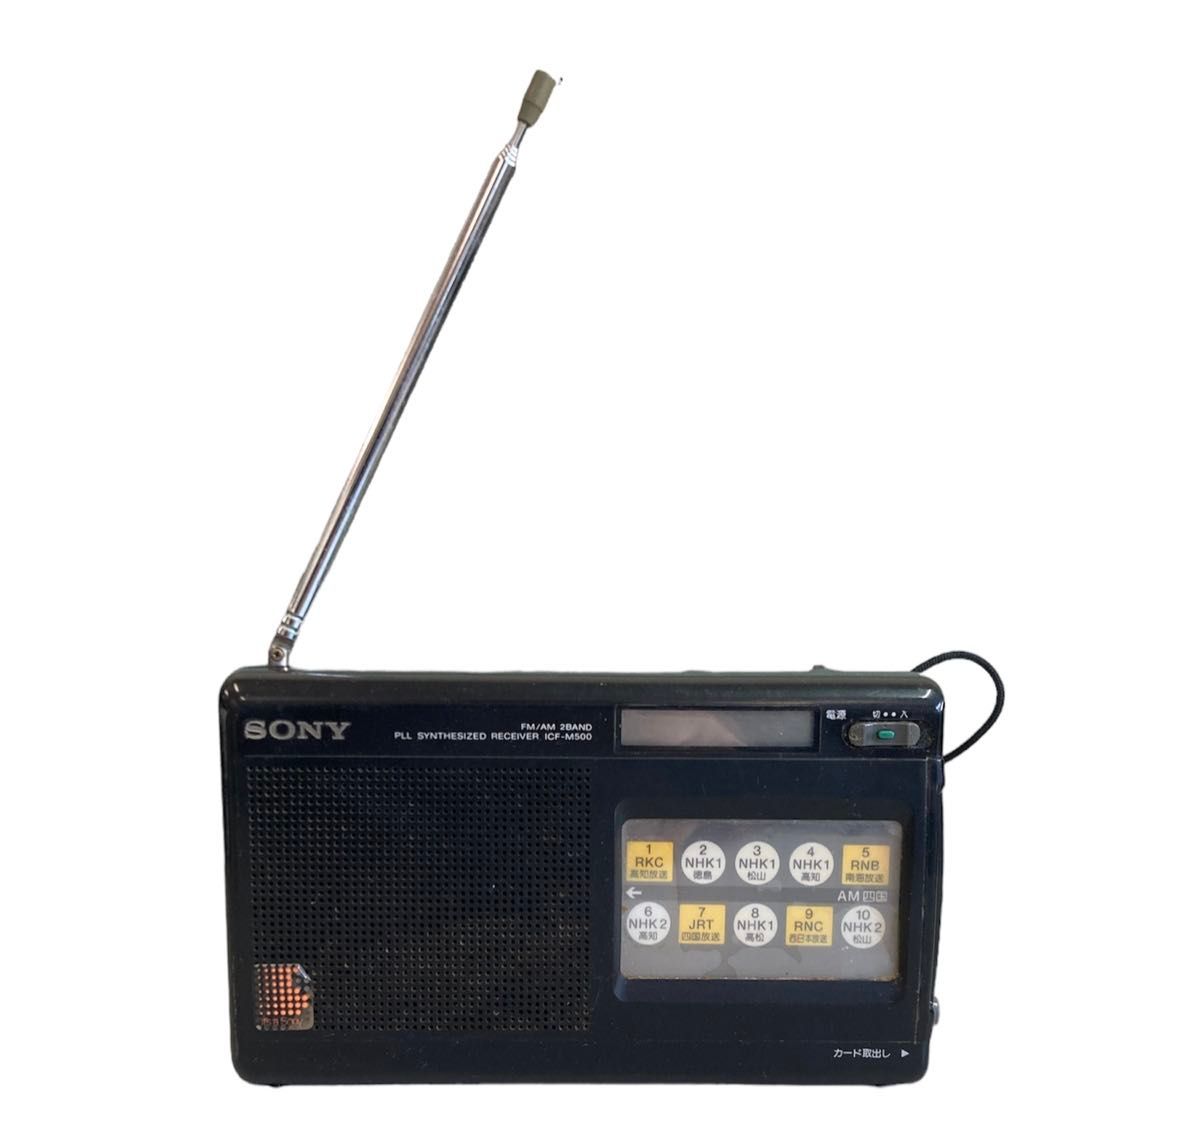 貴重 ソニー PLL シンセサイザーレシーバー ICF-M500 ラジオ カード